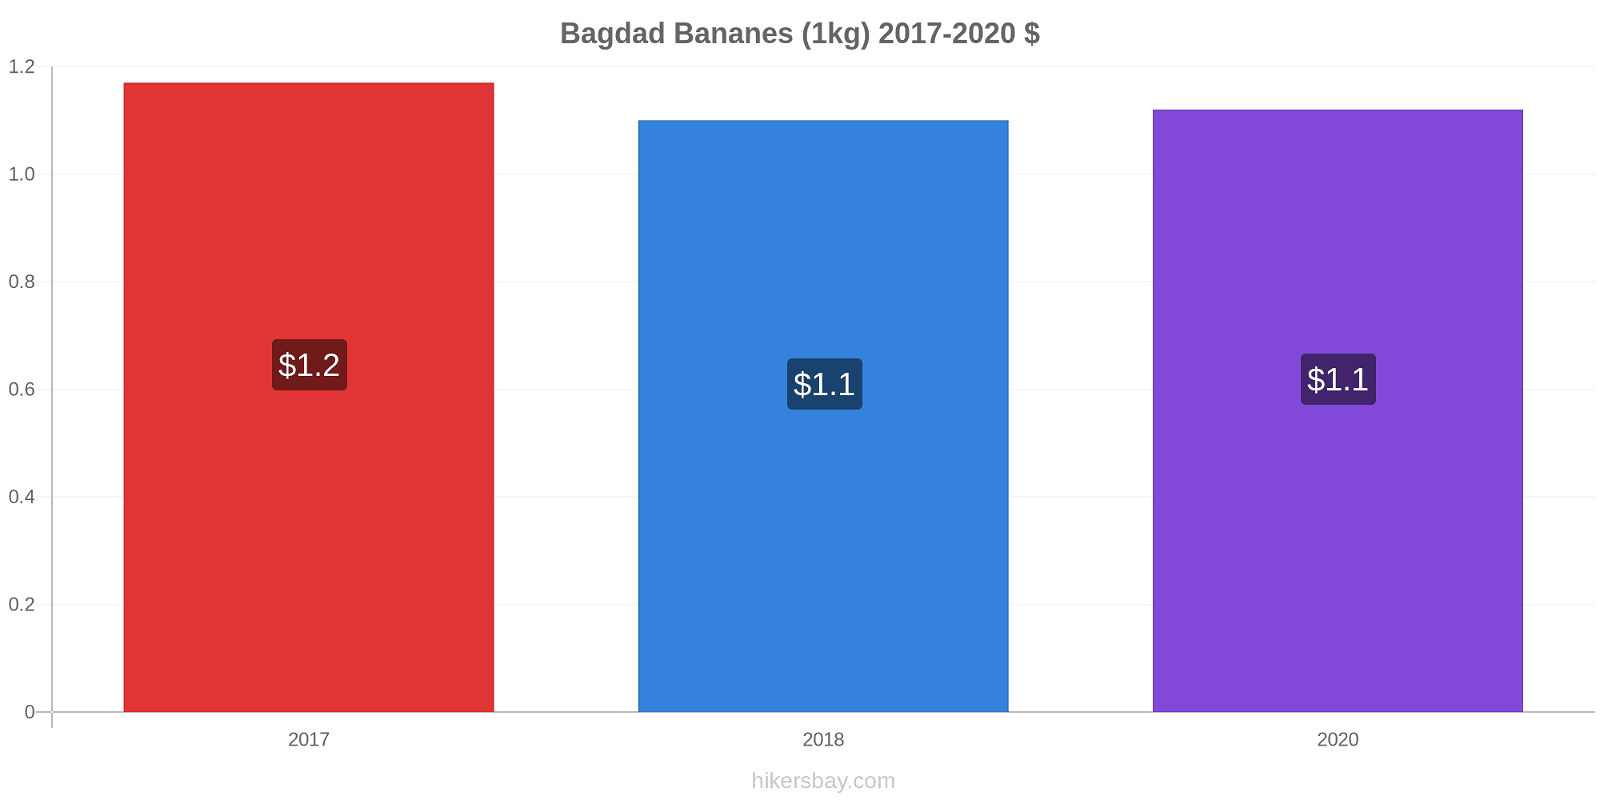 Bagdad changements de prix Bananes (1kg) hikersbay.com